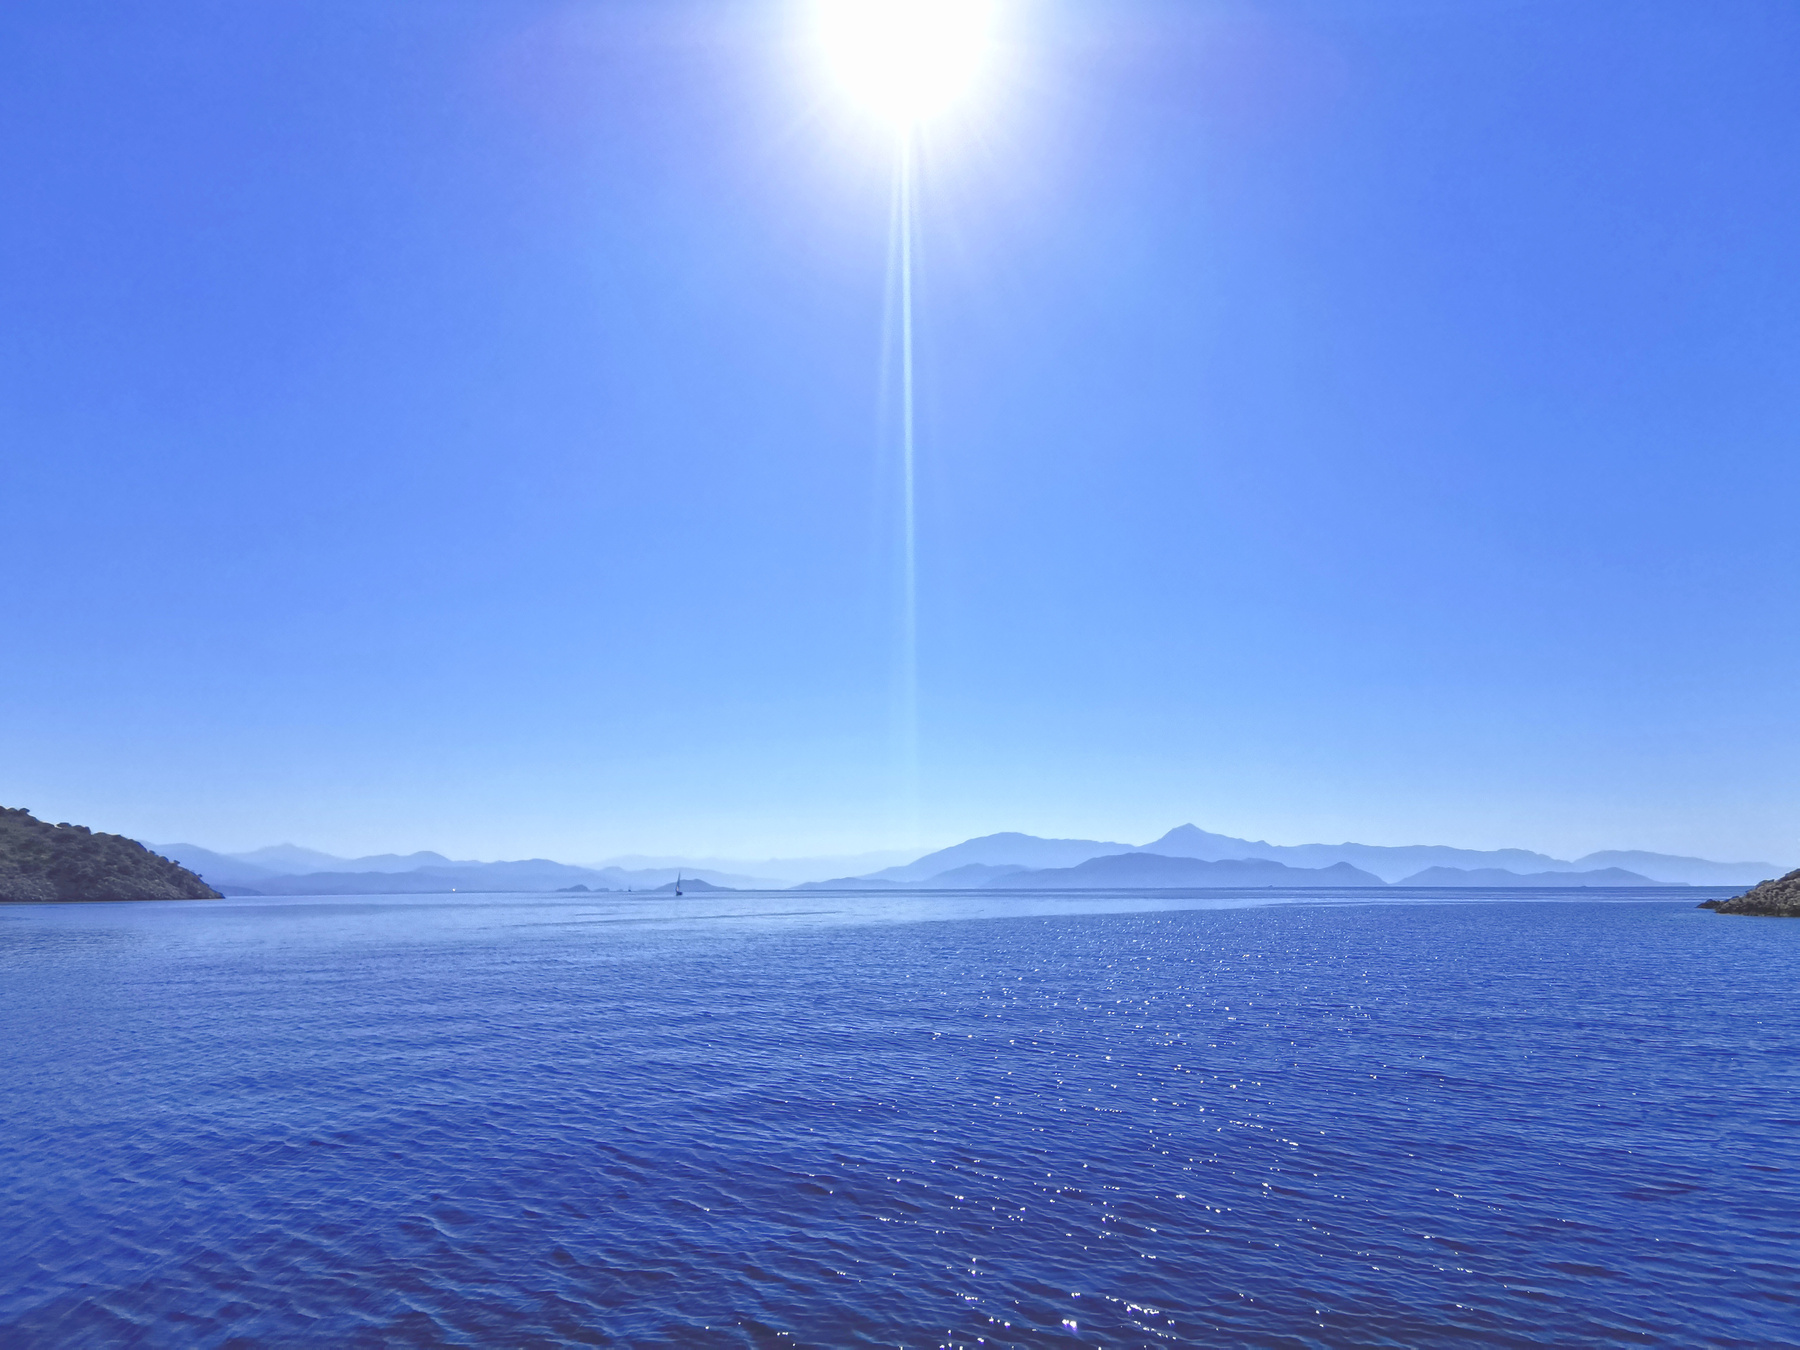 Incredible Turkey море солнце волны горы яхта парусник вода простор